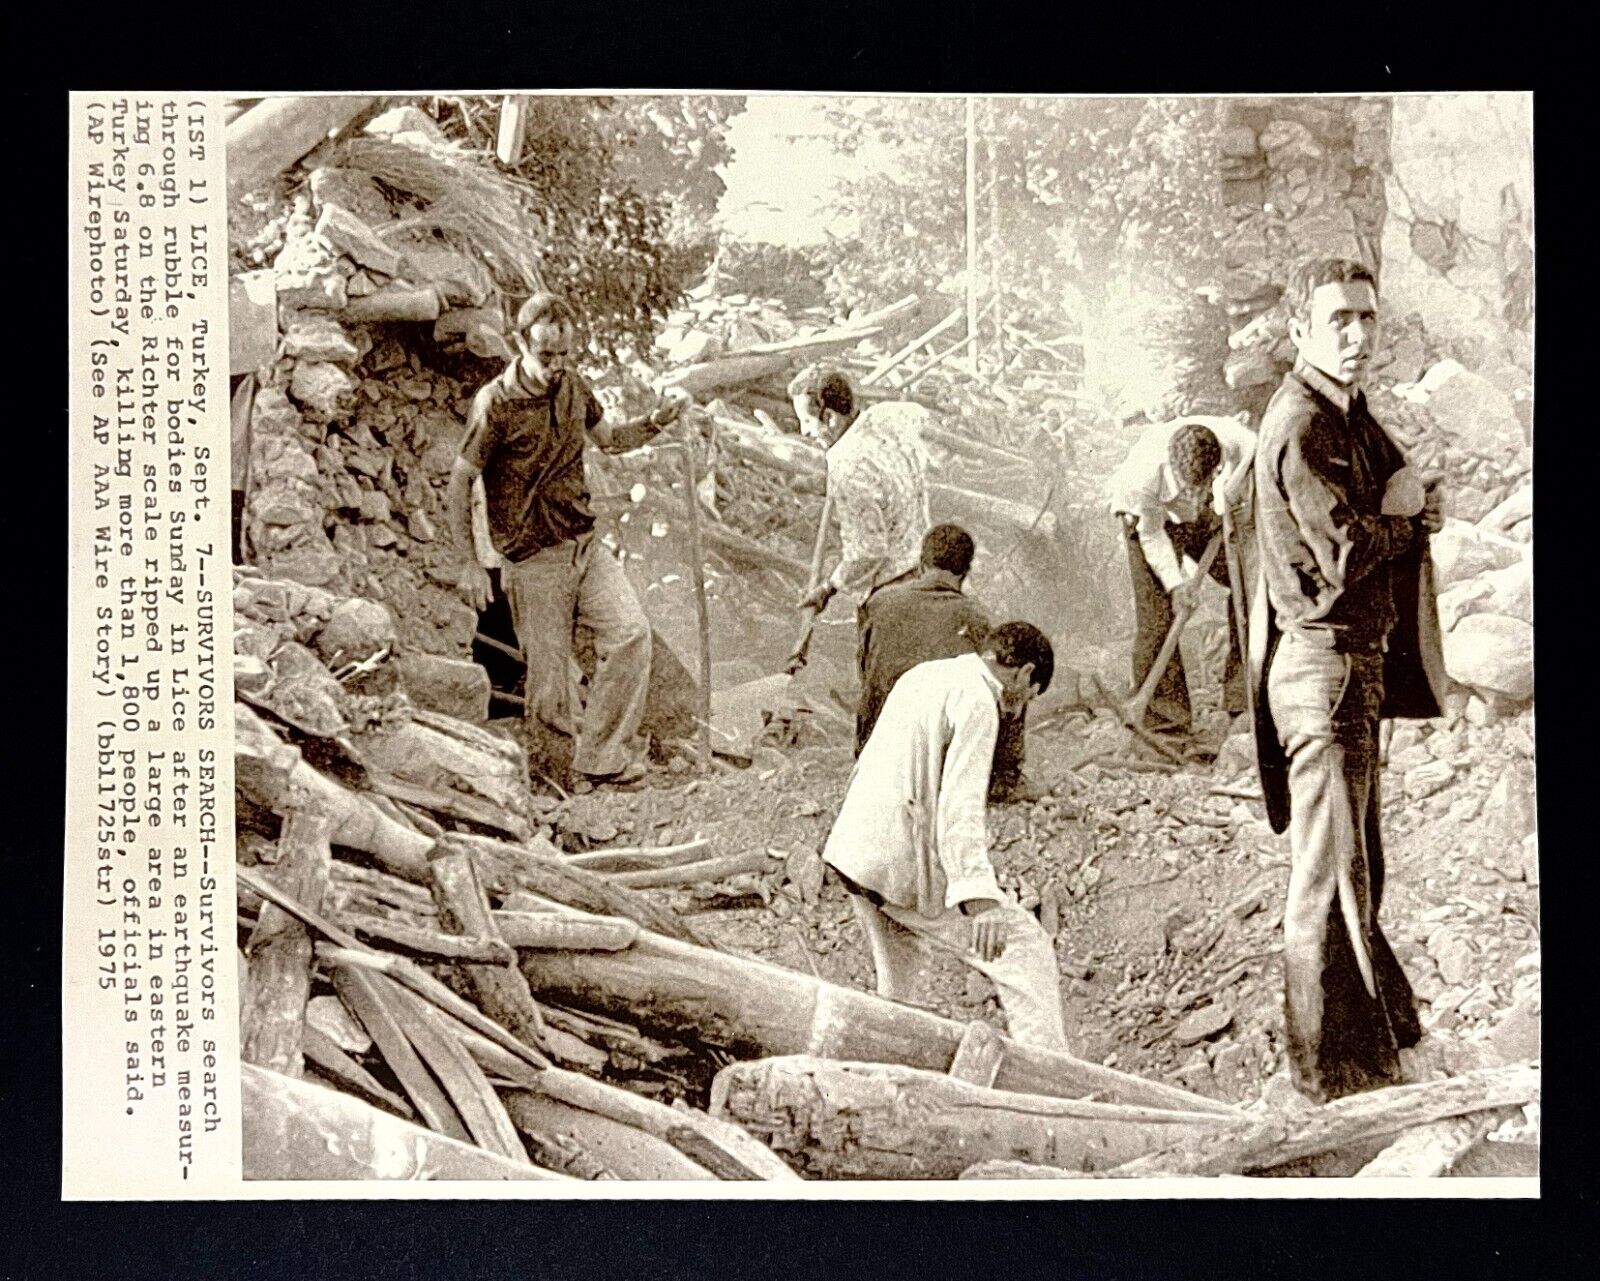 1975 Lice Turkey Earthquake Survivors Search Rubble Vintage Press Wire Photo